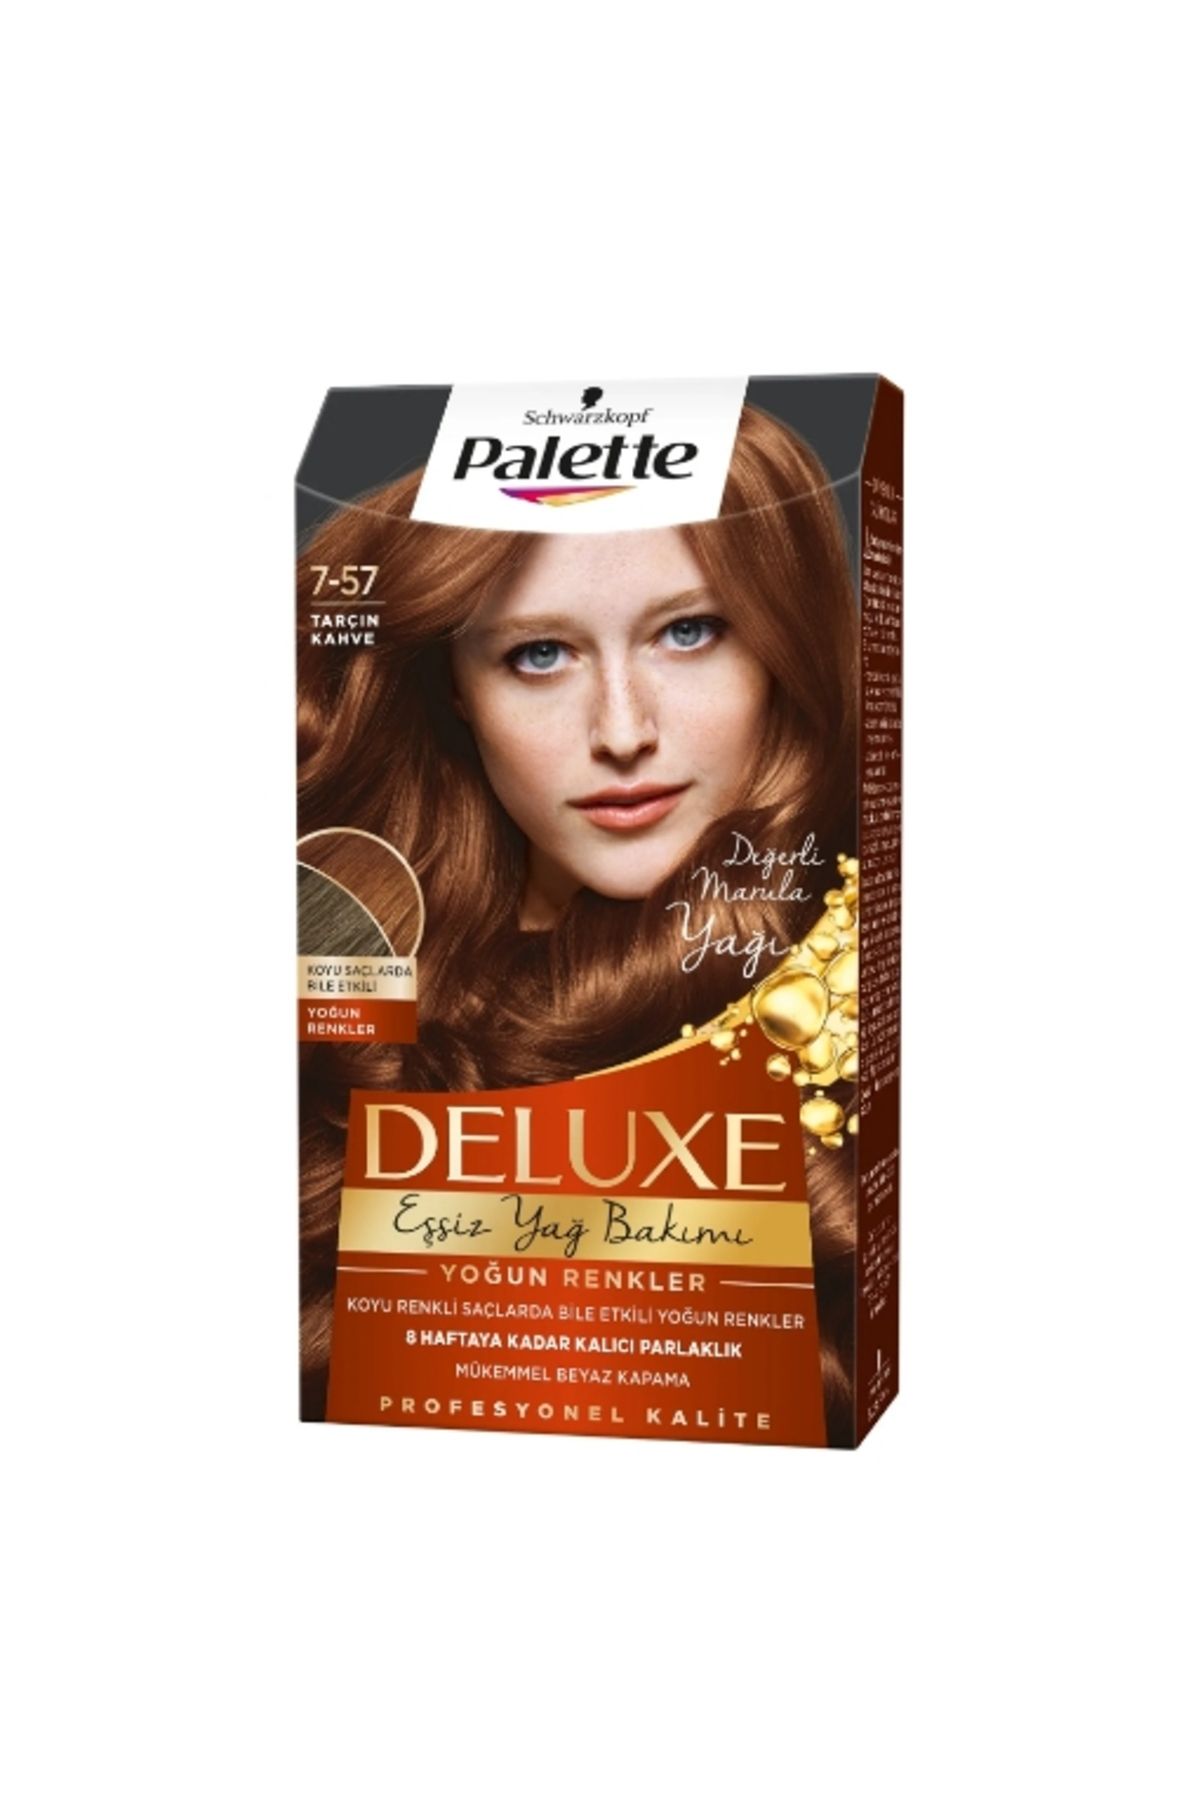 Palette Deluxe Tarçın Kahve 7.57 (4'LÜ)